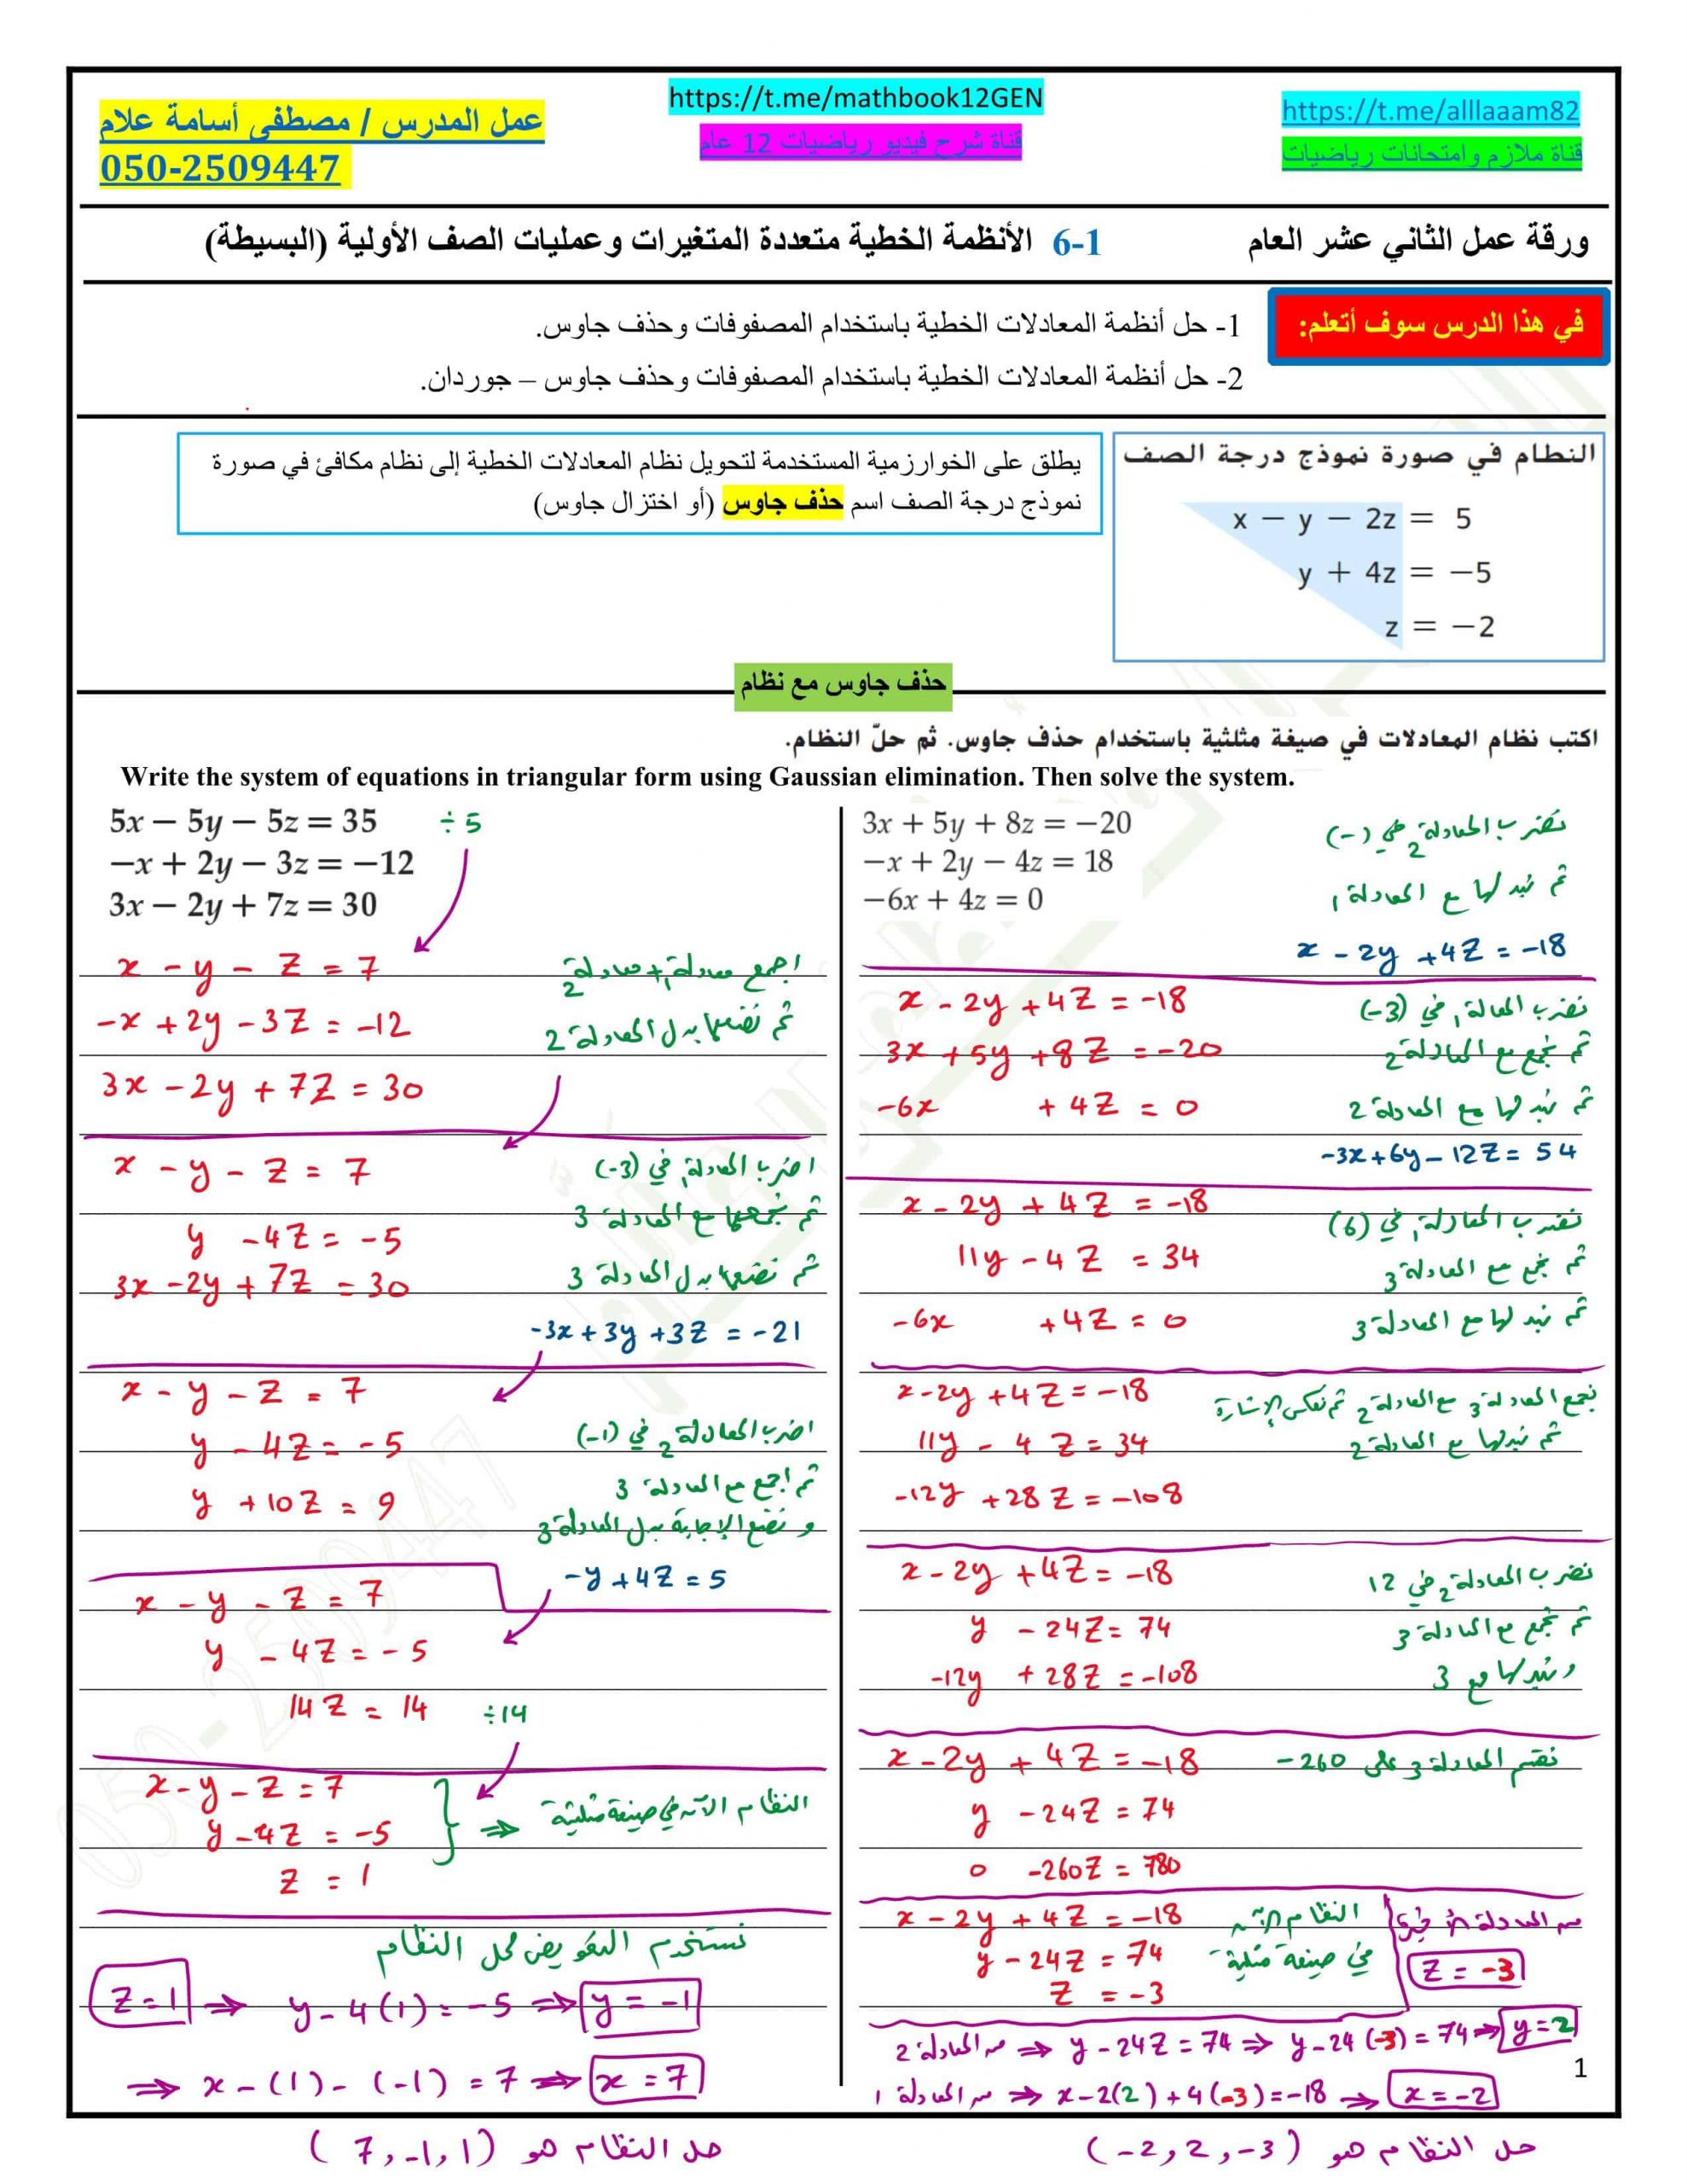 حل أوراق عمل الأنظمة الخطية متعددة المتغيرات وعمليات الصف الأولية - البسيطة الصف الثاني عشر عام مادة الرياضيات المتكاملة 